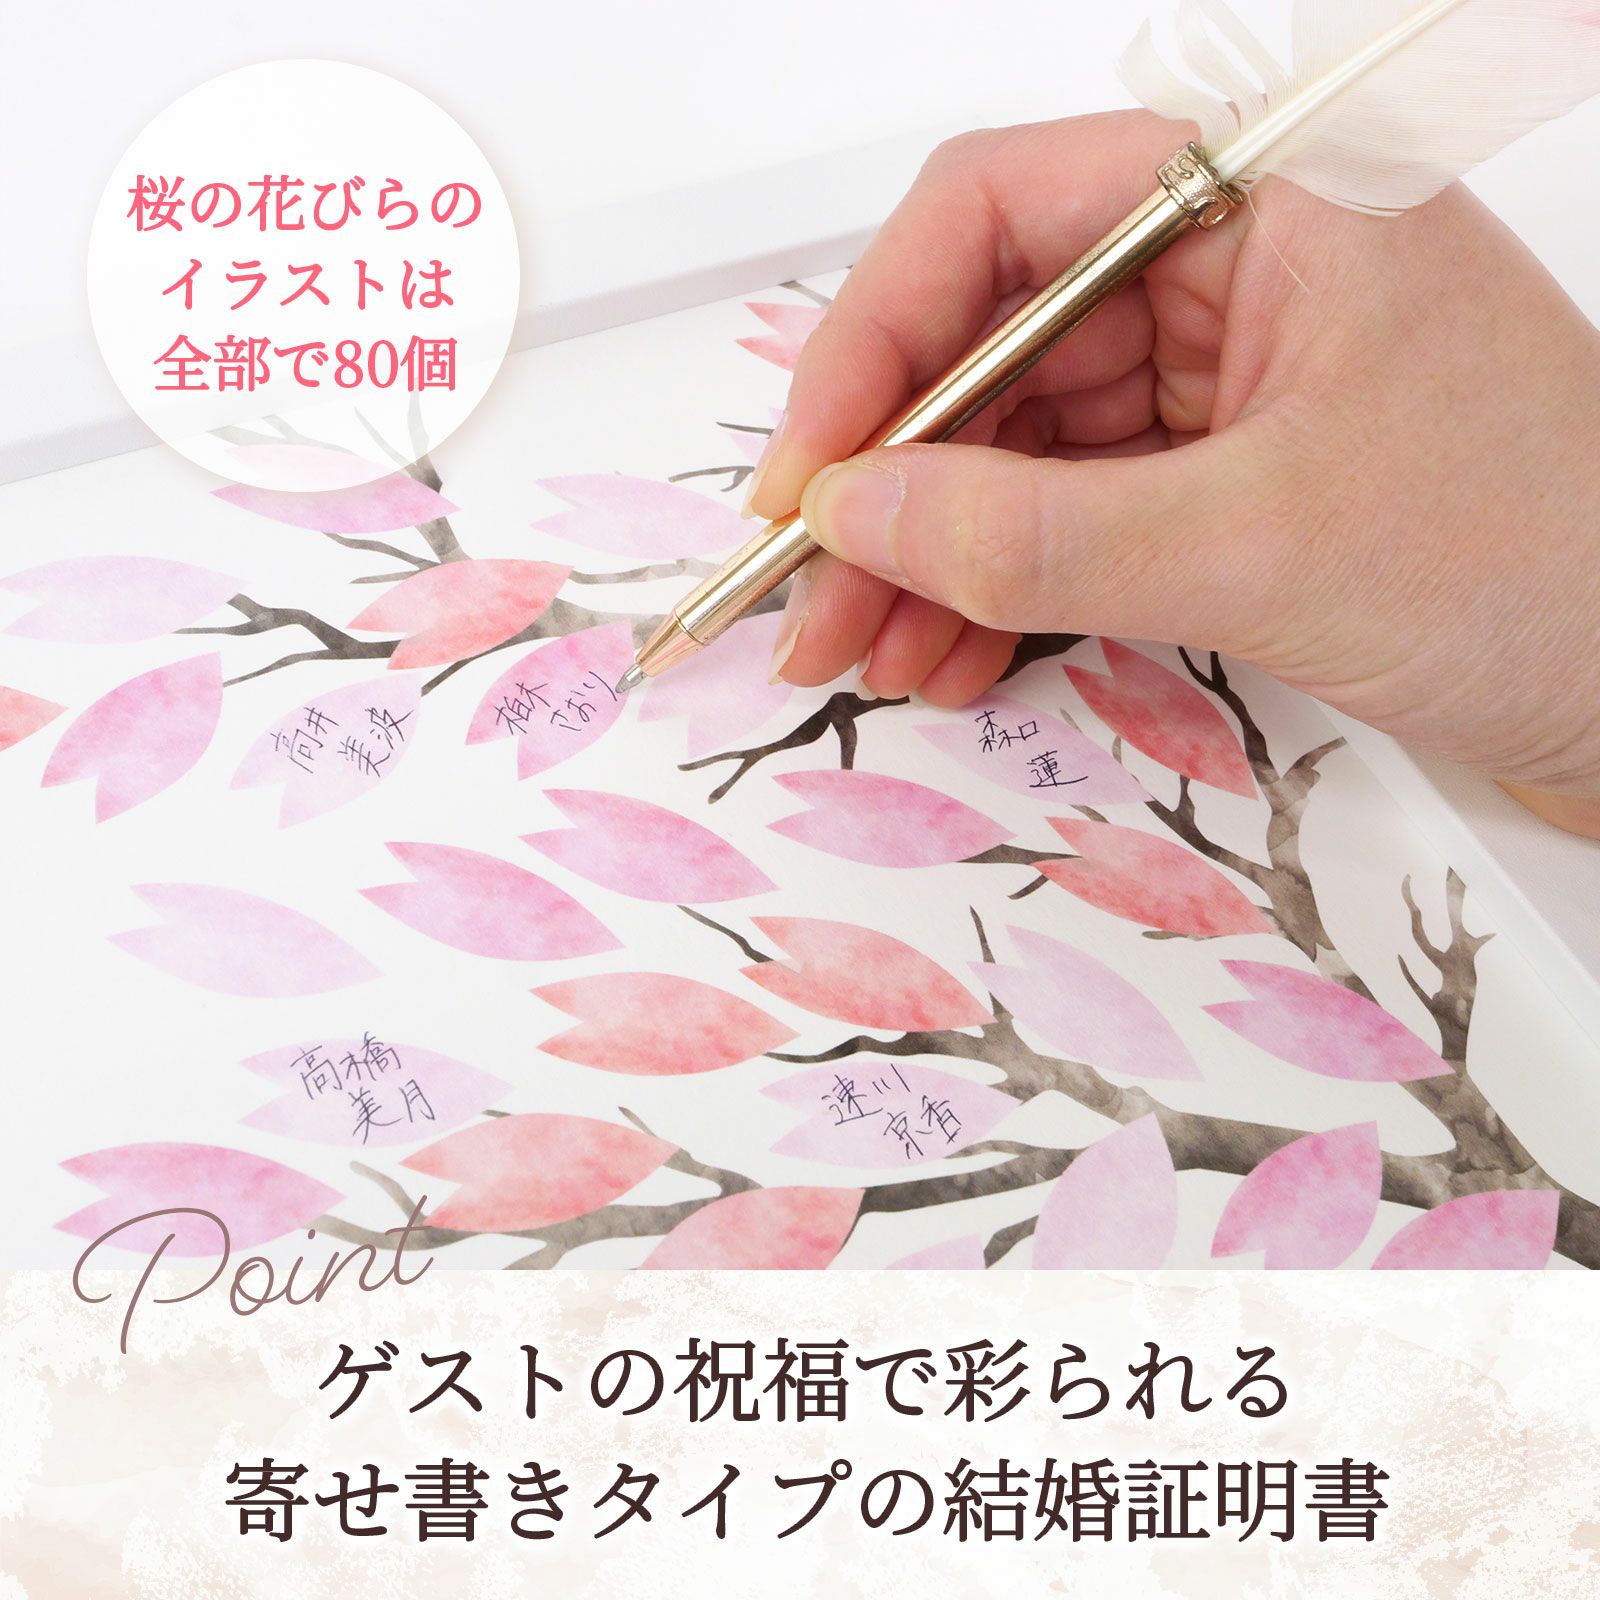 桜デザインの可愛い結婚証明書。はなびら1枚1枚にゲストのサインが入って、お二人の思い出の品になること間違いなし